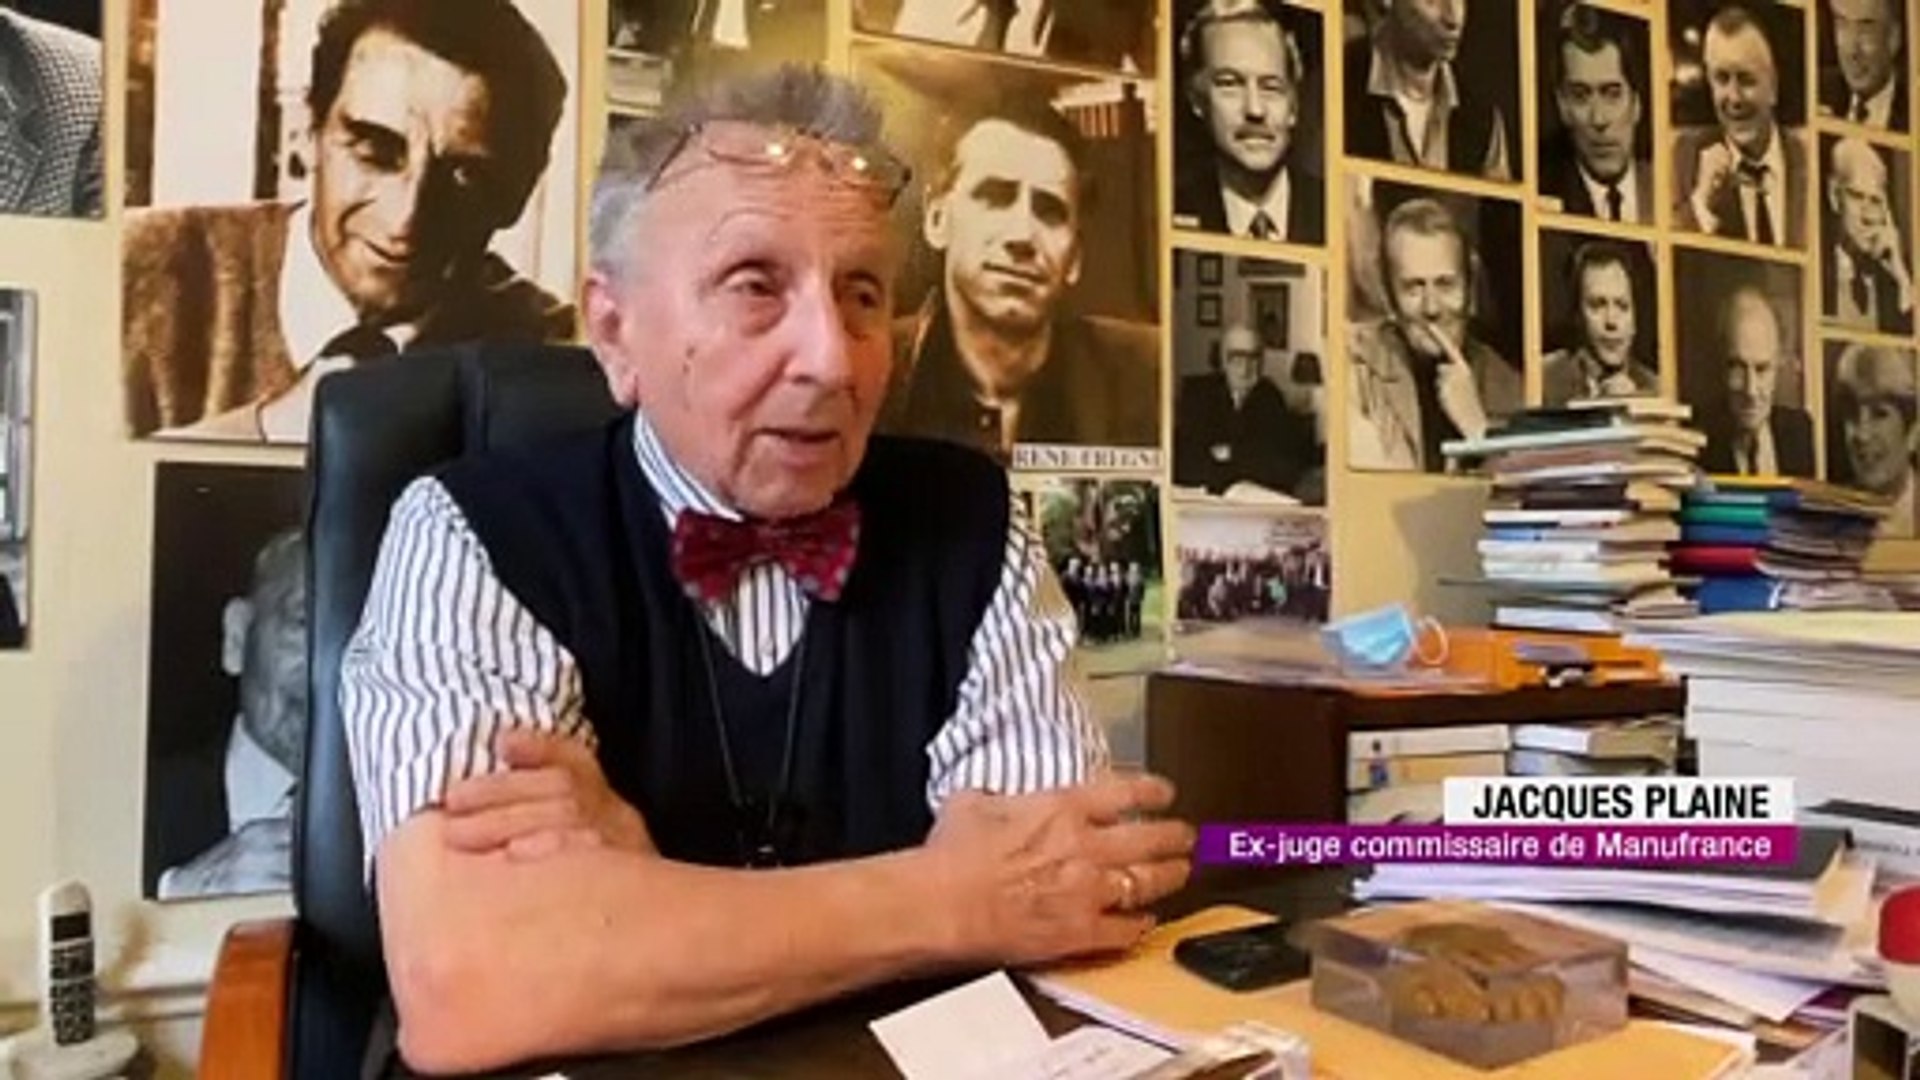 Bernard Tapie : Des souvenirs moins glorieux dans la Loire - Vidéo  Dailymotion